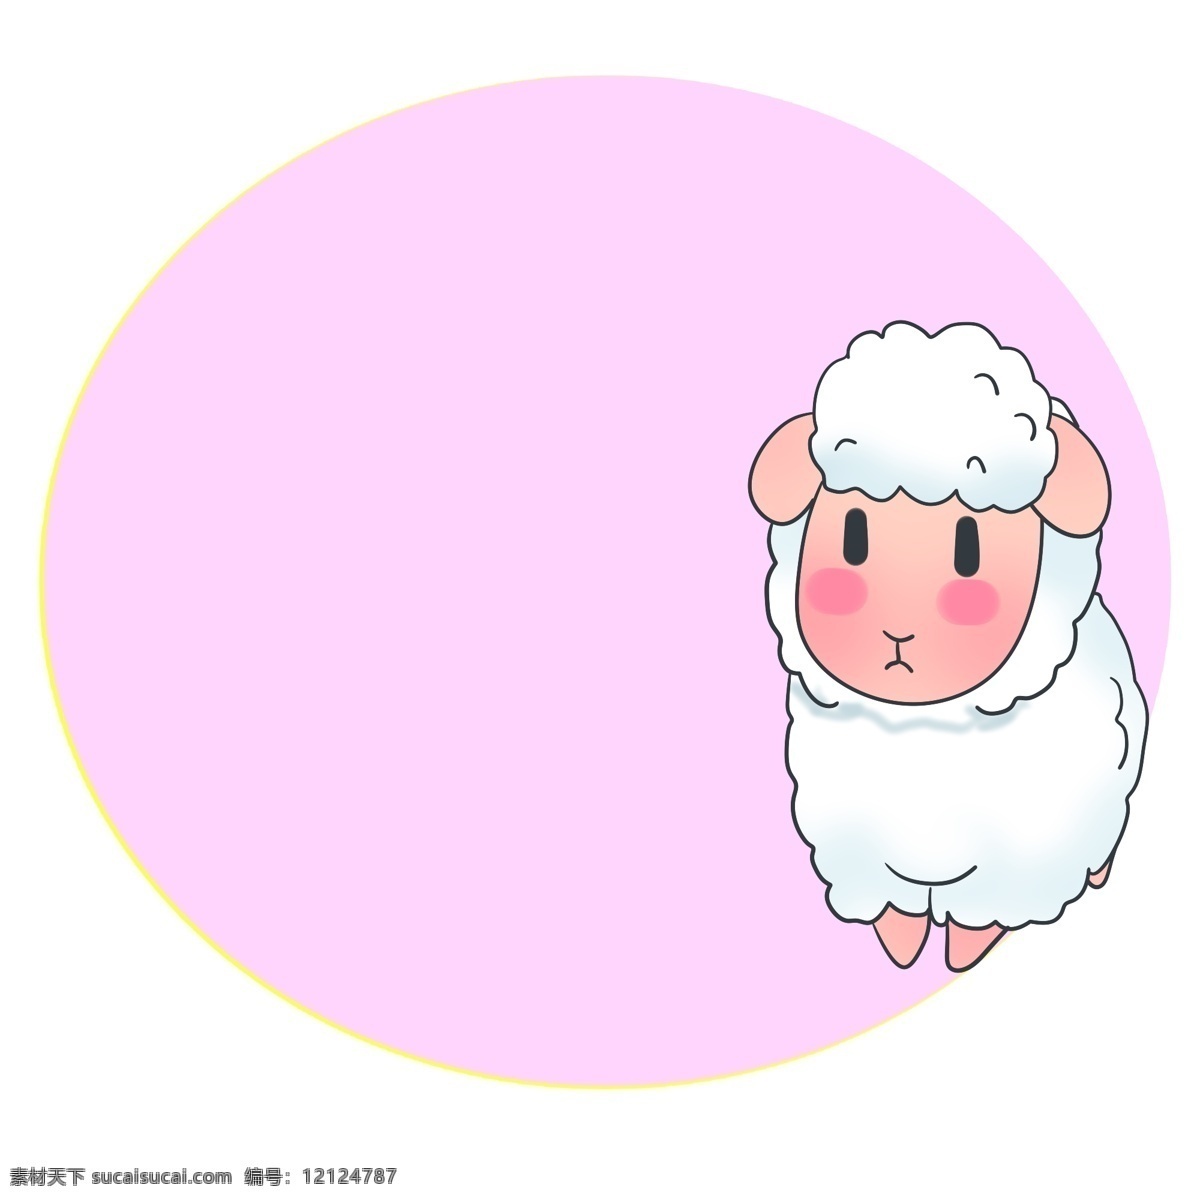 手绘 粉色 边框 插画 粉色的边框 手绘插画 卡通插画 边框插画 边框装饰 漂亮的边框 可爱的小羊